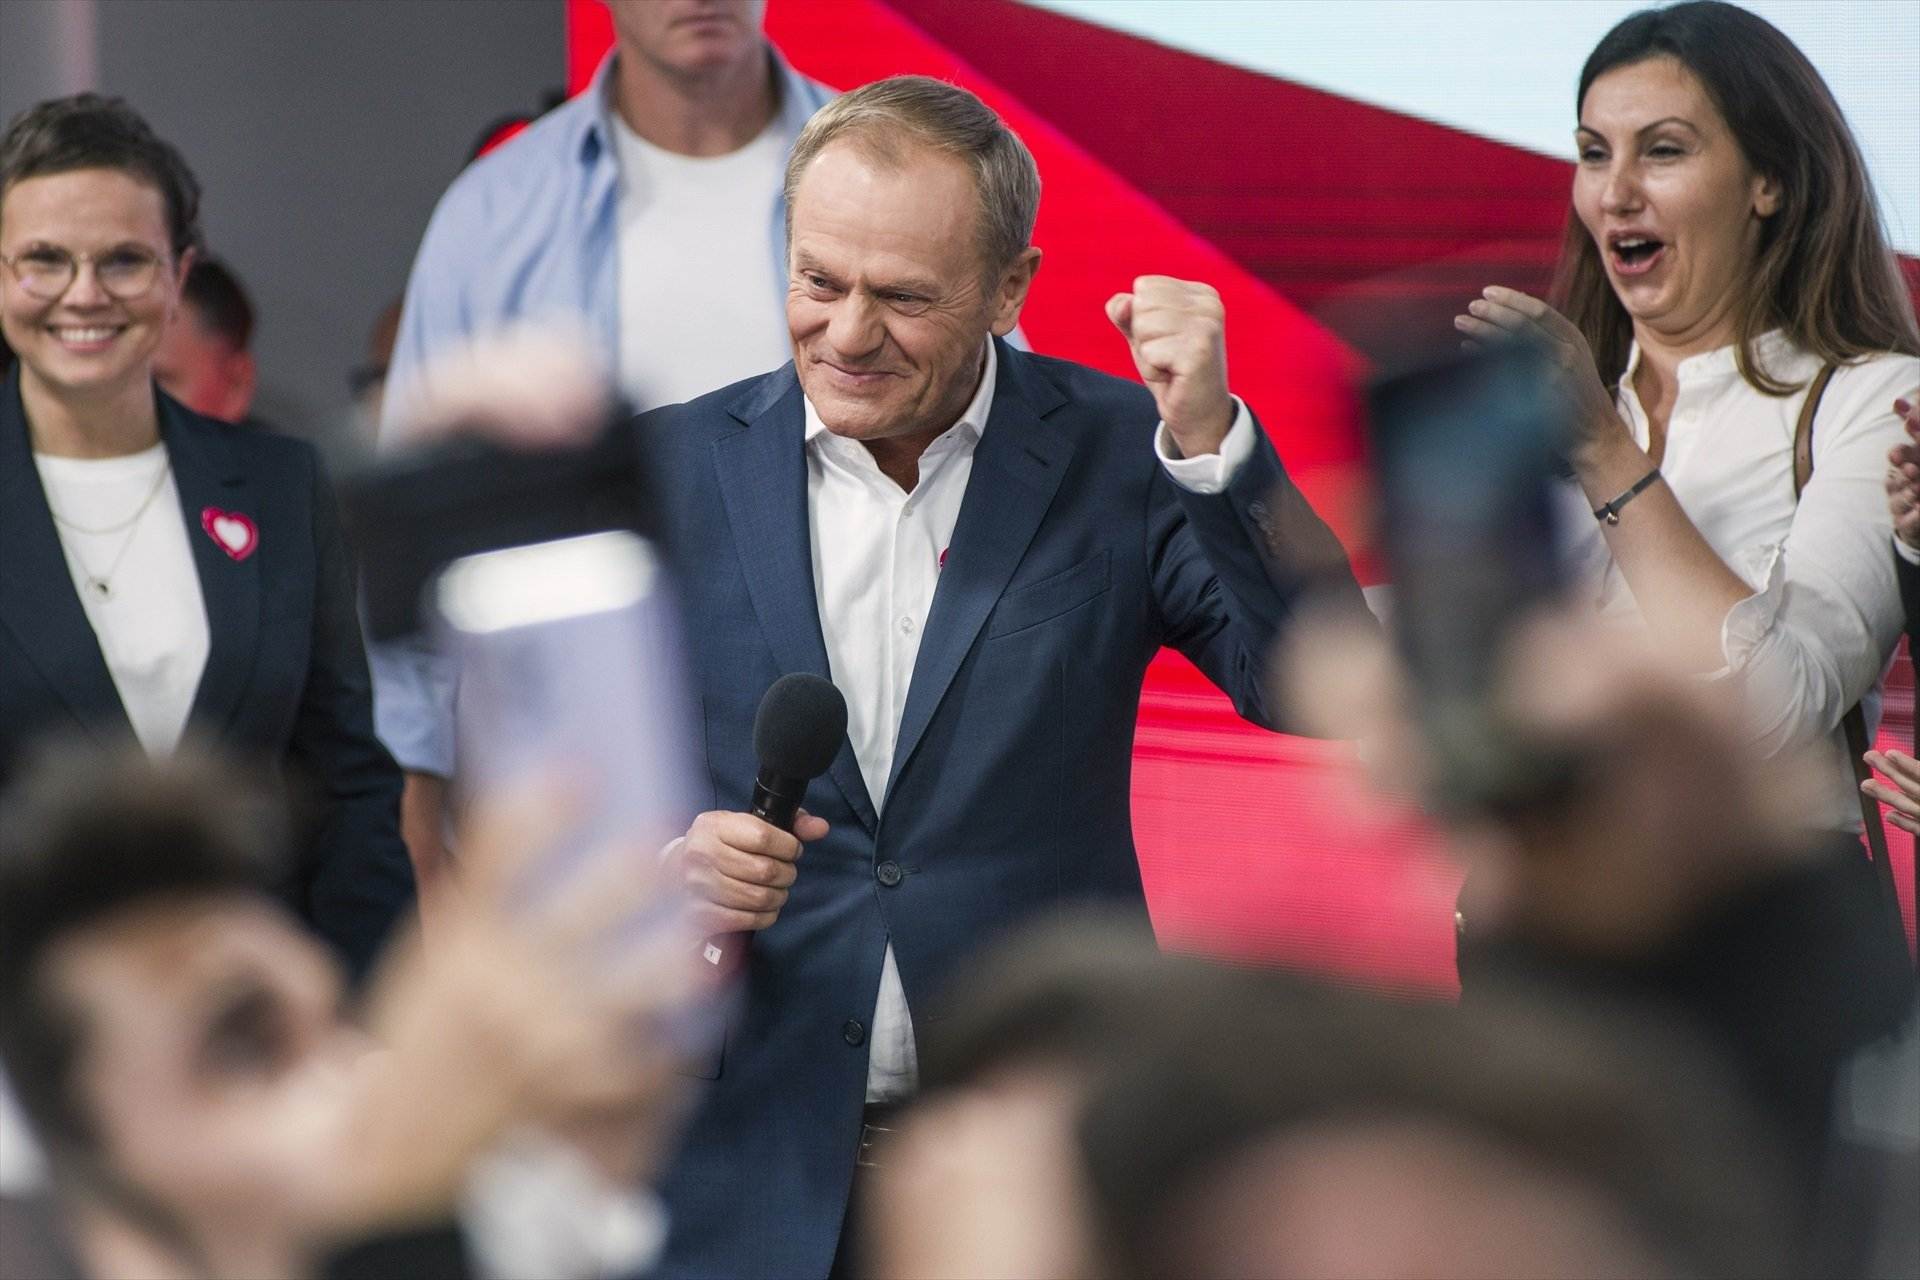 L'escrutini confirma que Tusk podrà formar govern a Polònia: la ultradreta perd la majoria